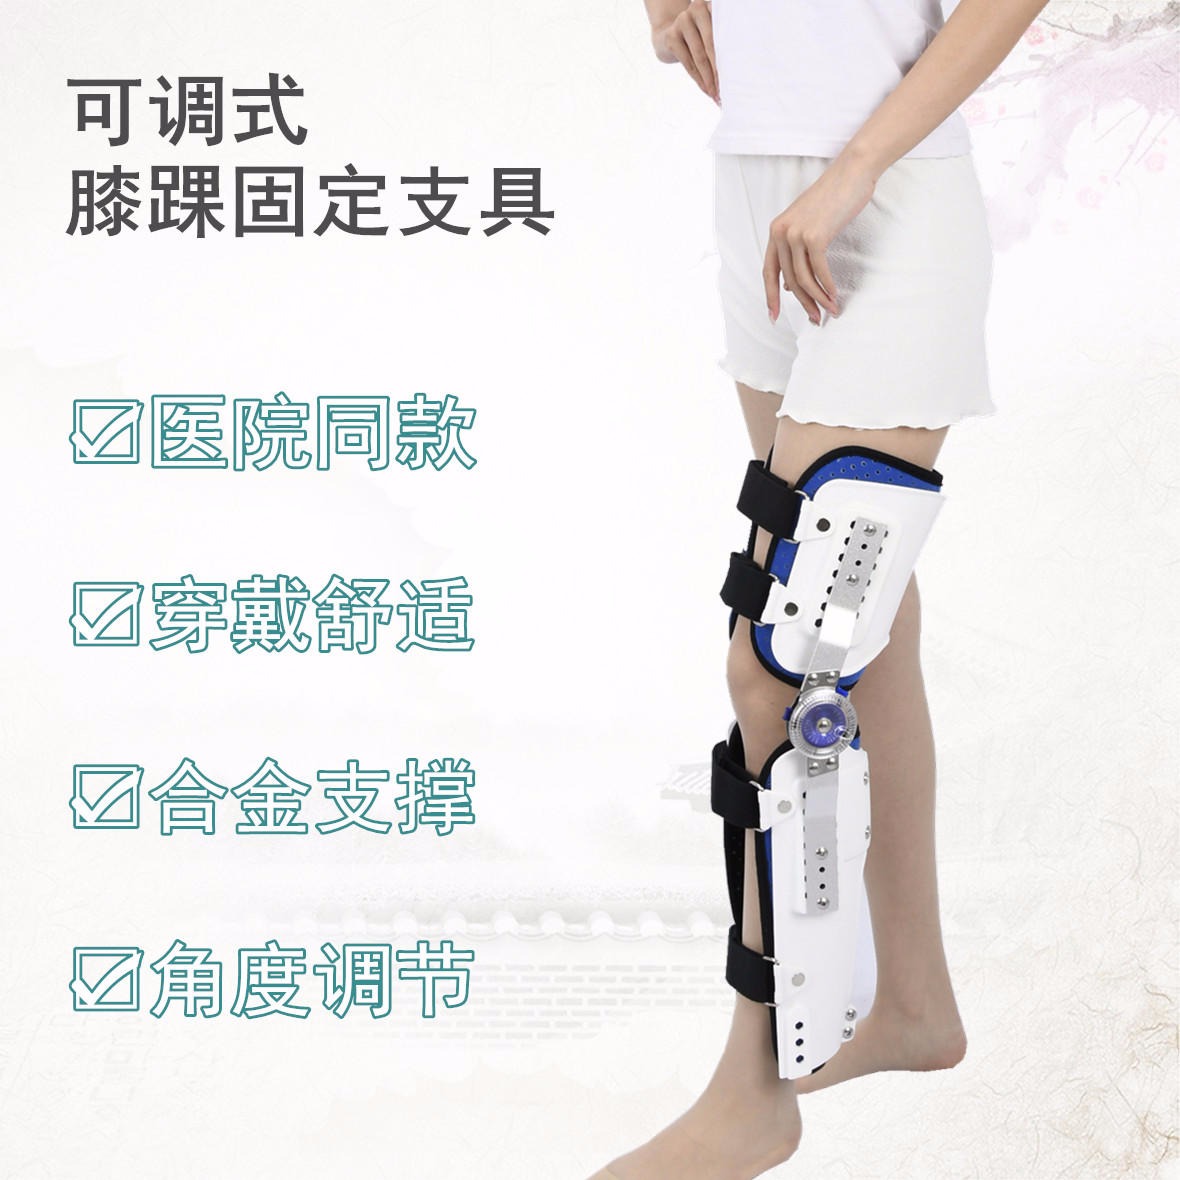 康奇医疗厂家可调膝踝护具膝关节截瘫行走固定支具股骨骨折护具胯部术后固定护具9